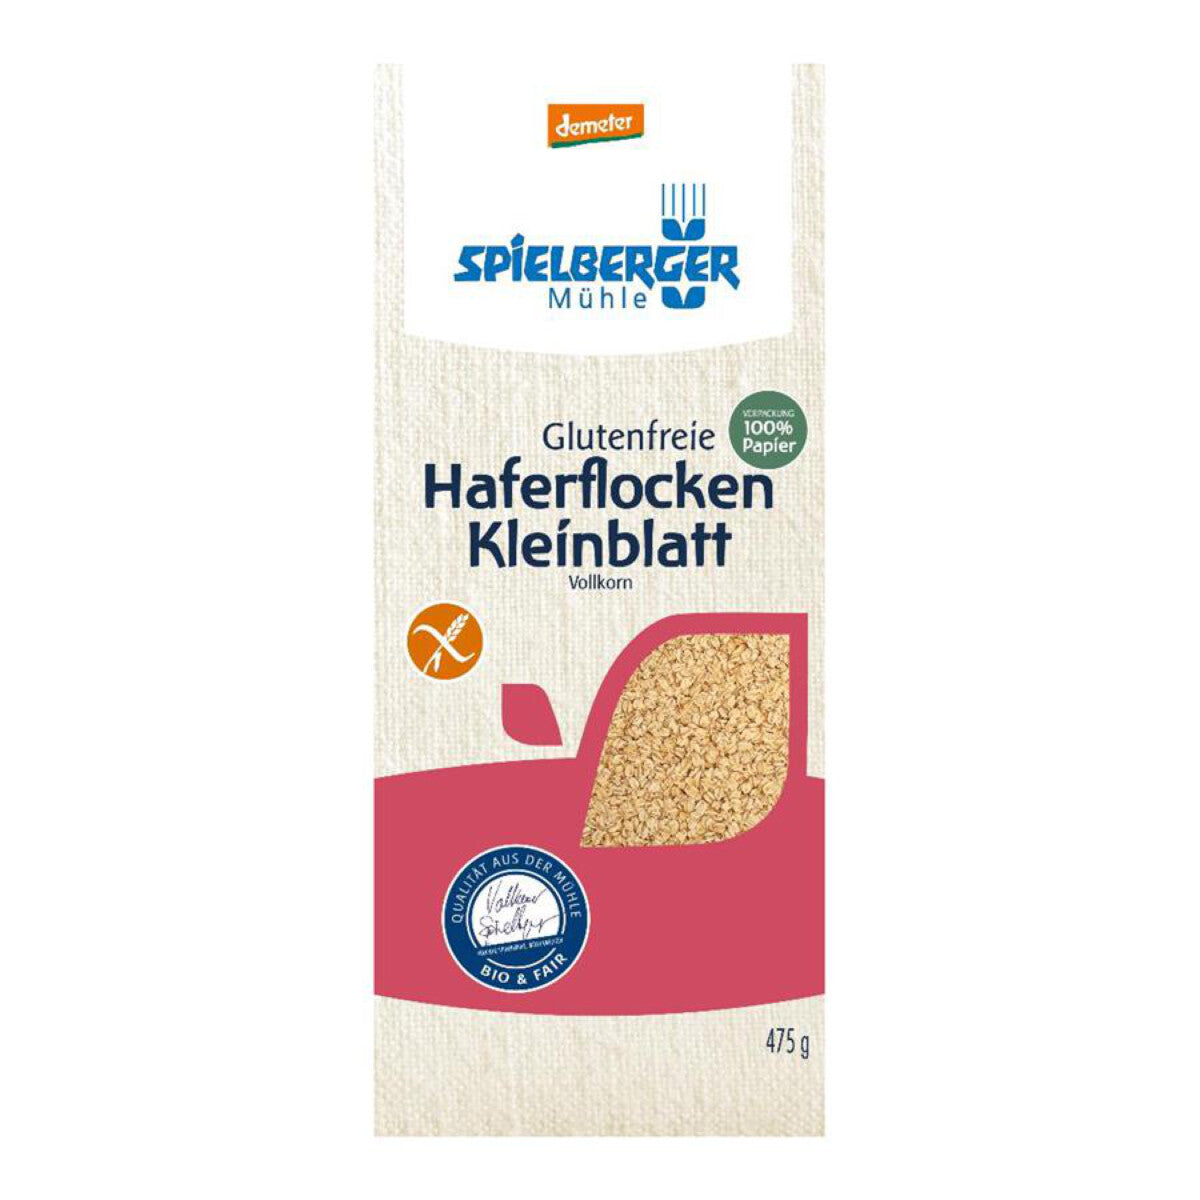 SPIELBERGER MÜHLE Kleinblatt Haferflocken, glutenfrei - 475 g